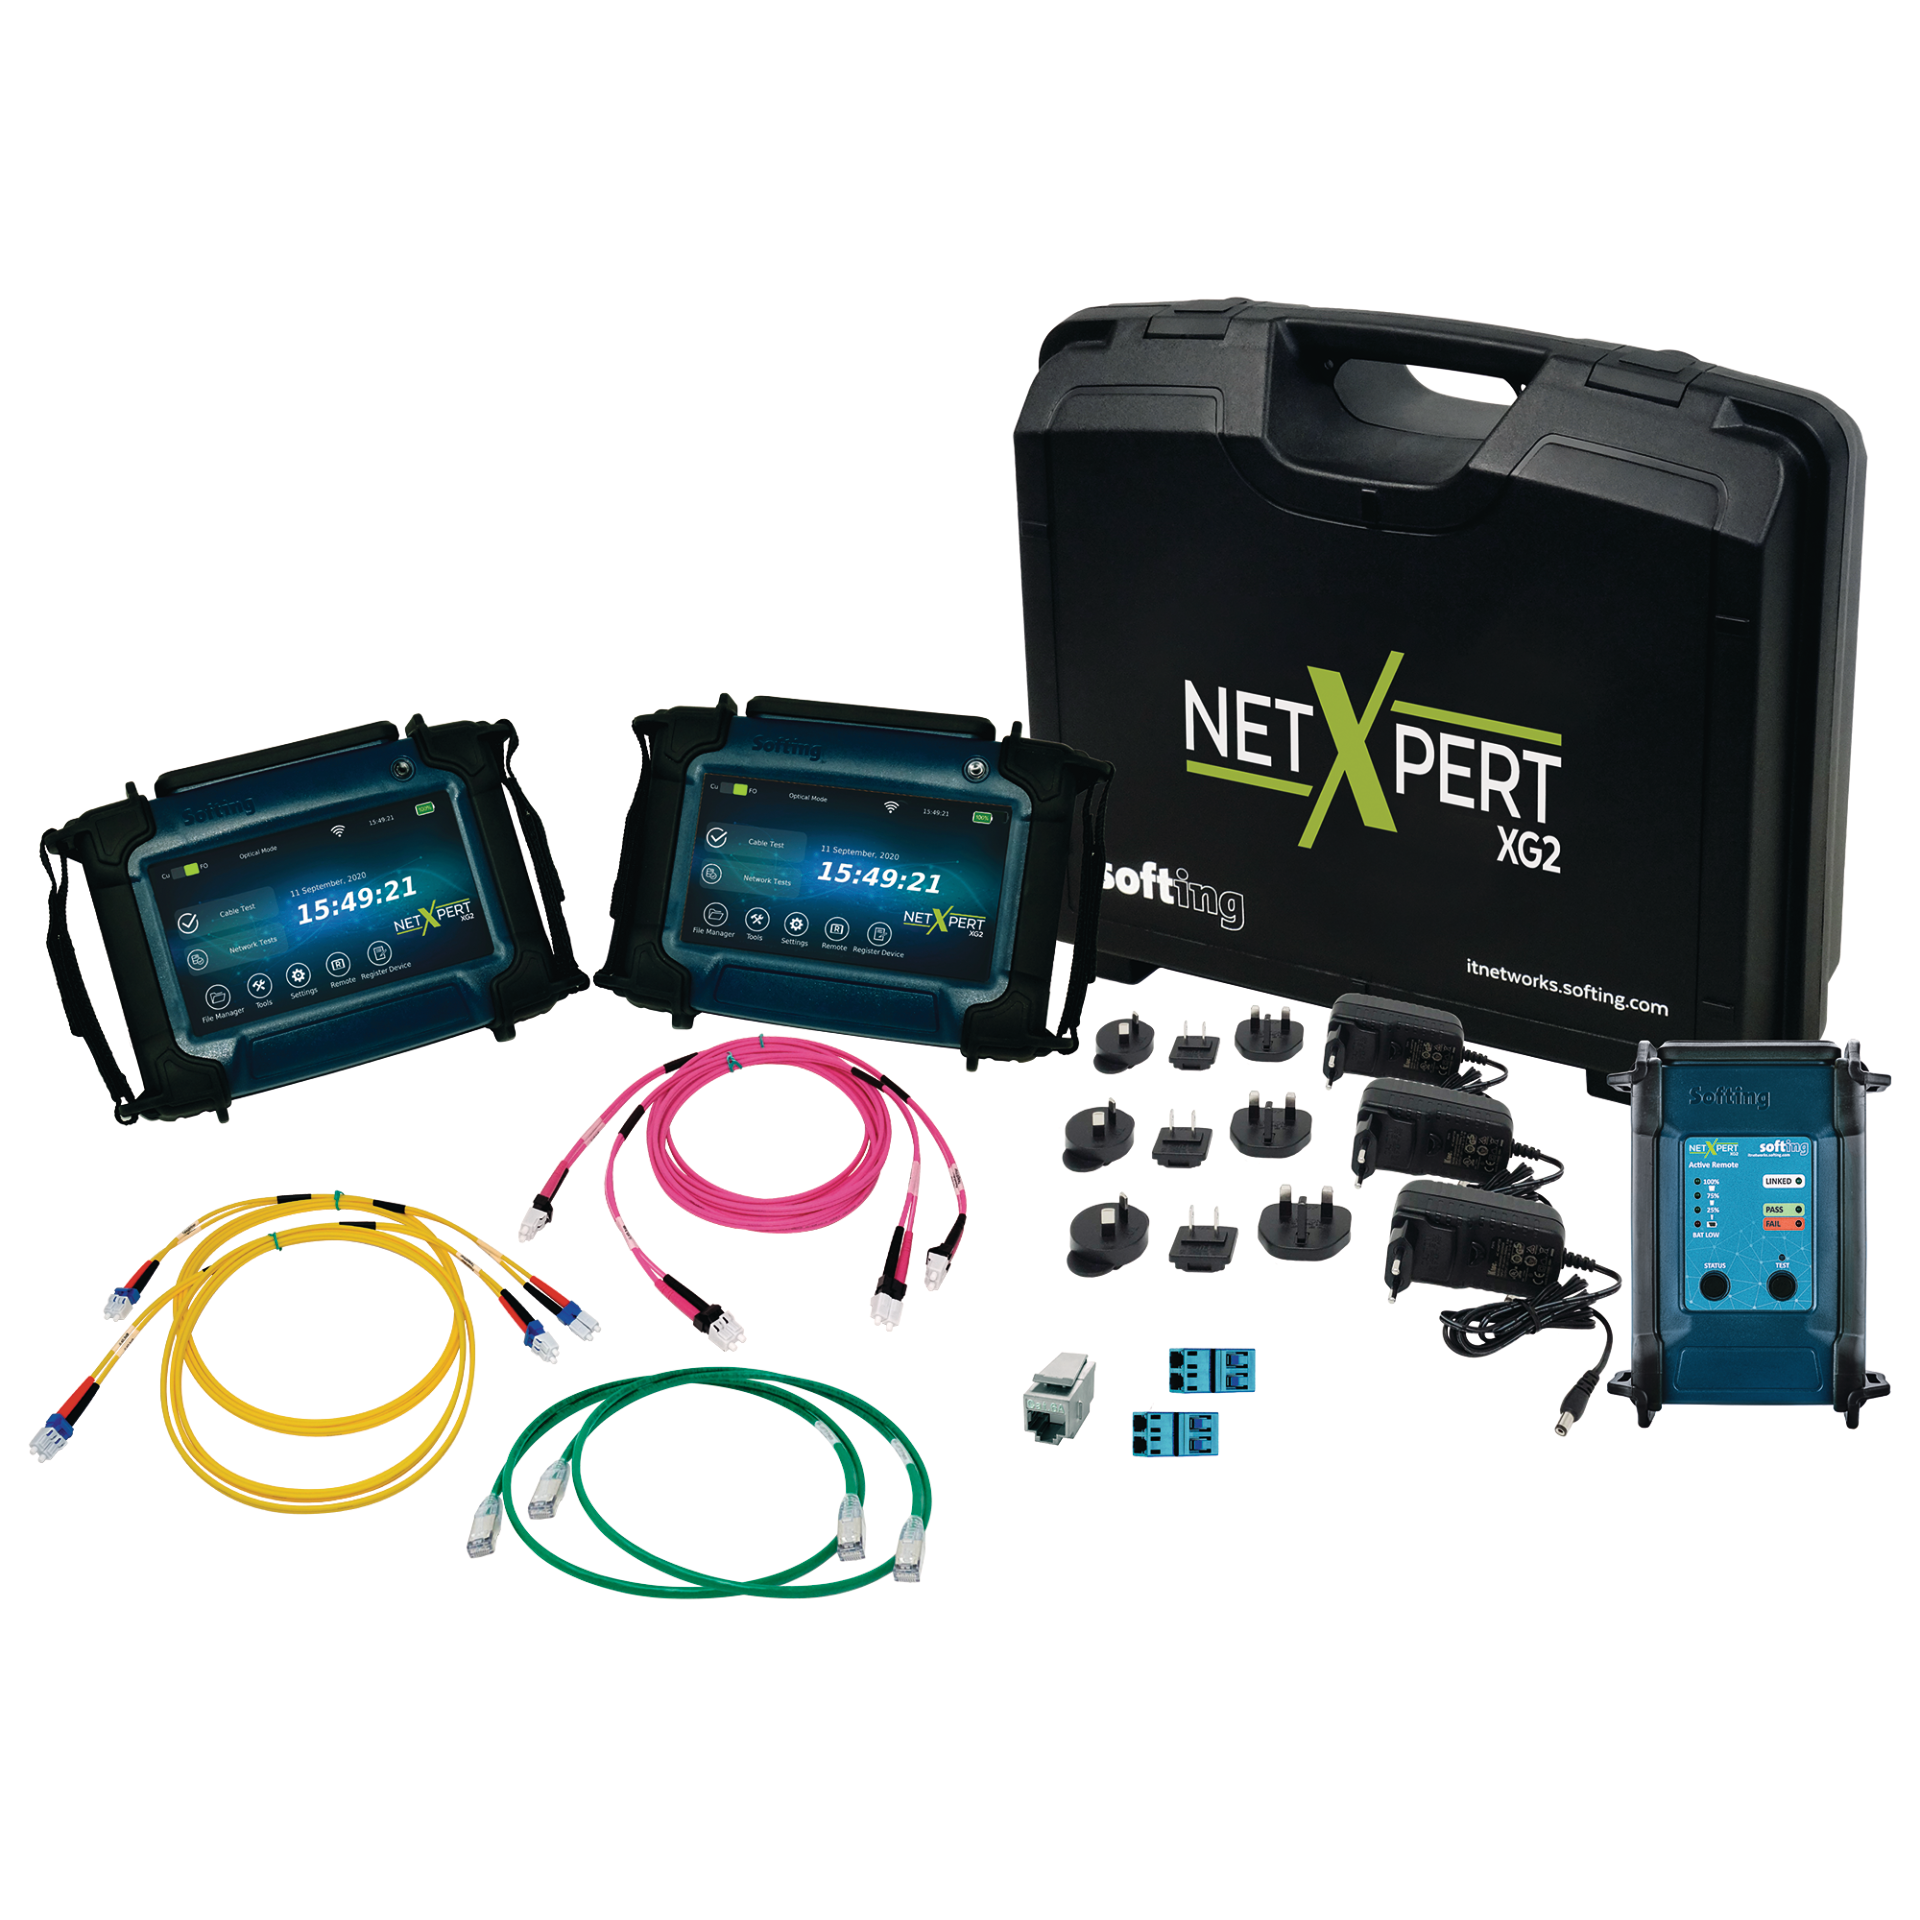 NetXpert XG2 PLUS bis 10GBit/s, Netzwerk-/Verkabelungs-Qualifizierer